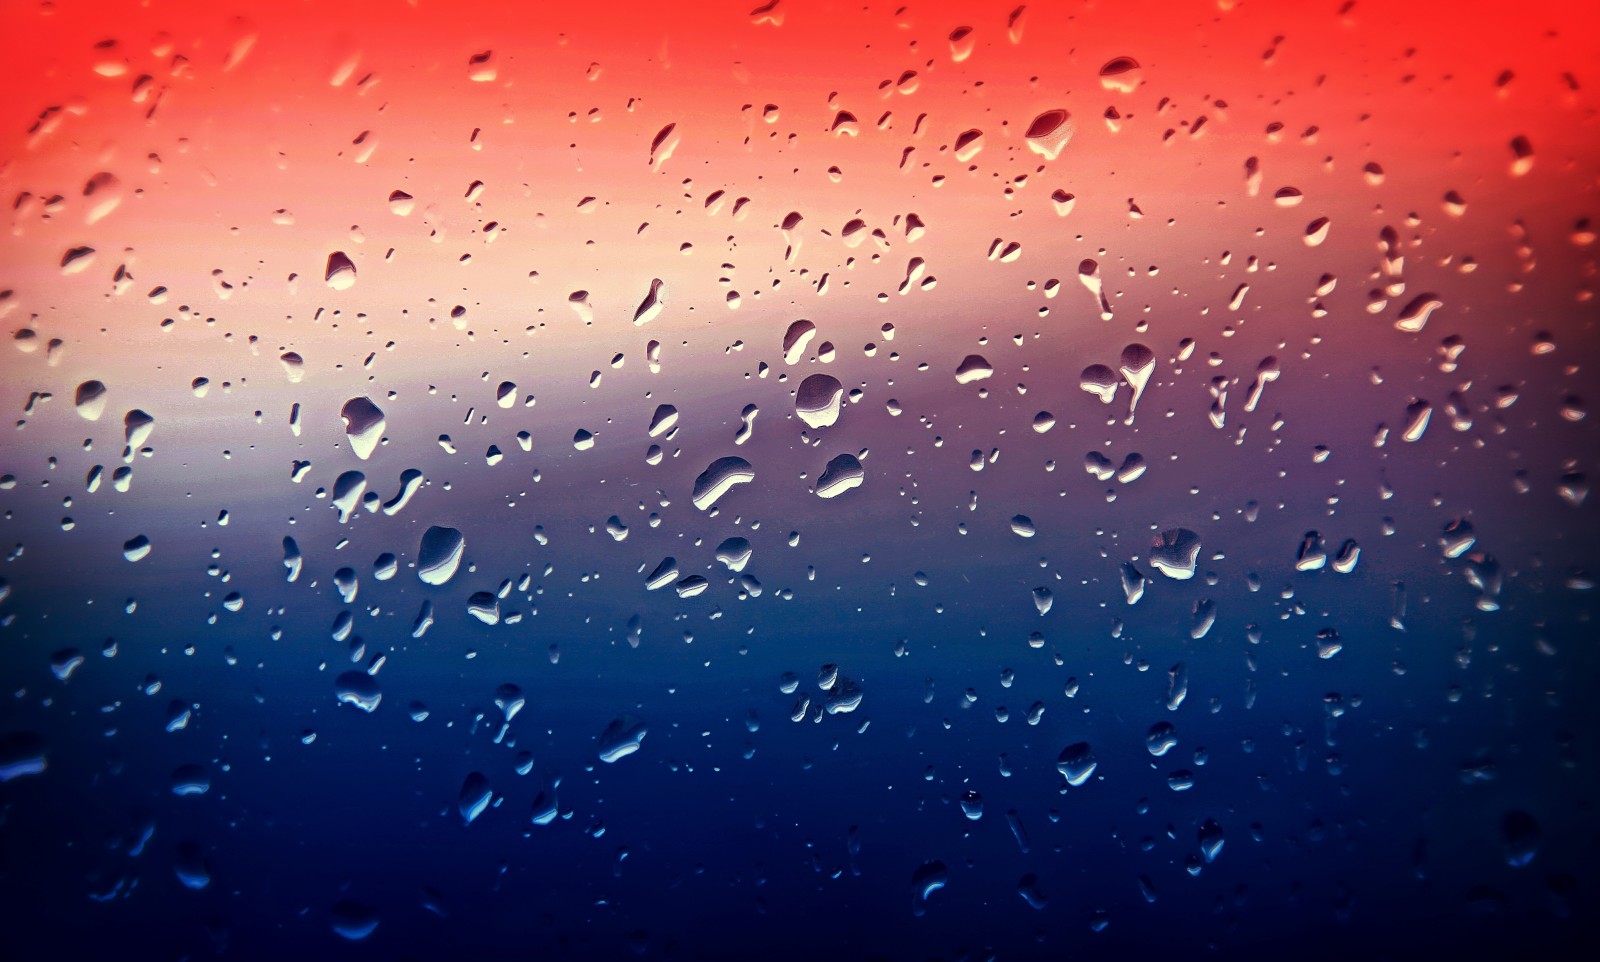 กระจก, ภาพถ่าย, ฝน, ยาหยอด, สี, ช่างภาพ, Alessandro Di Cicco